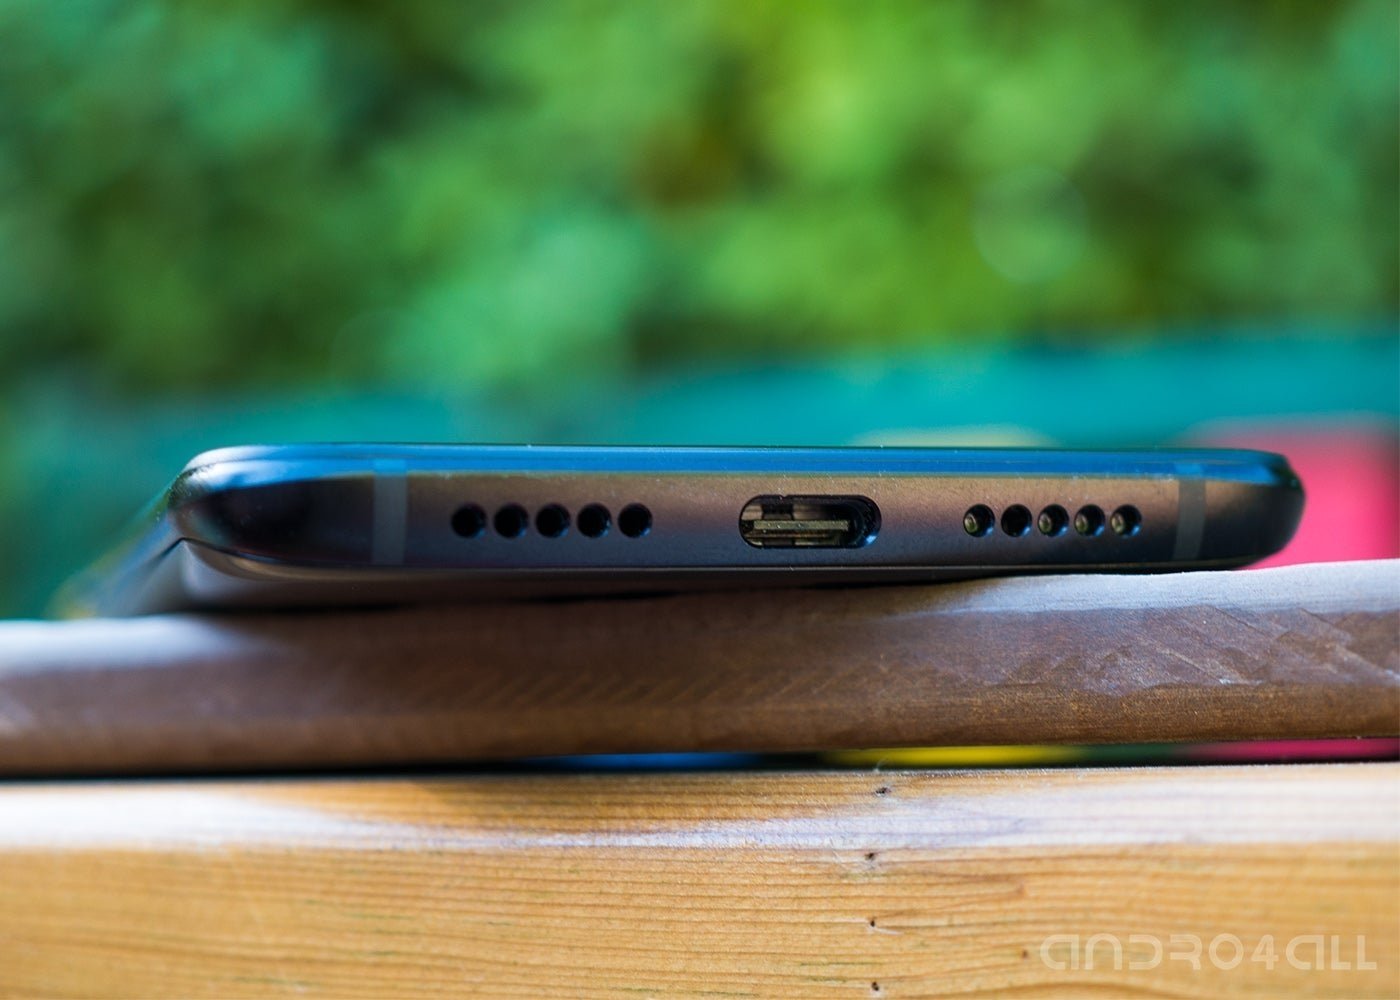 OnePlus 6T, altavoz y micrófono sin jack de audio, y USB